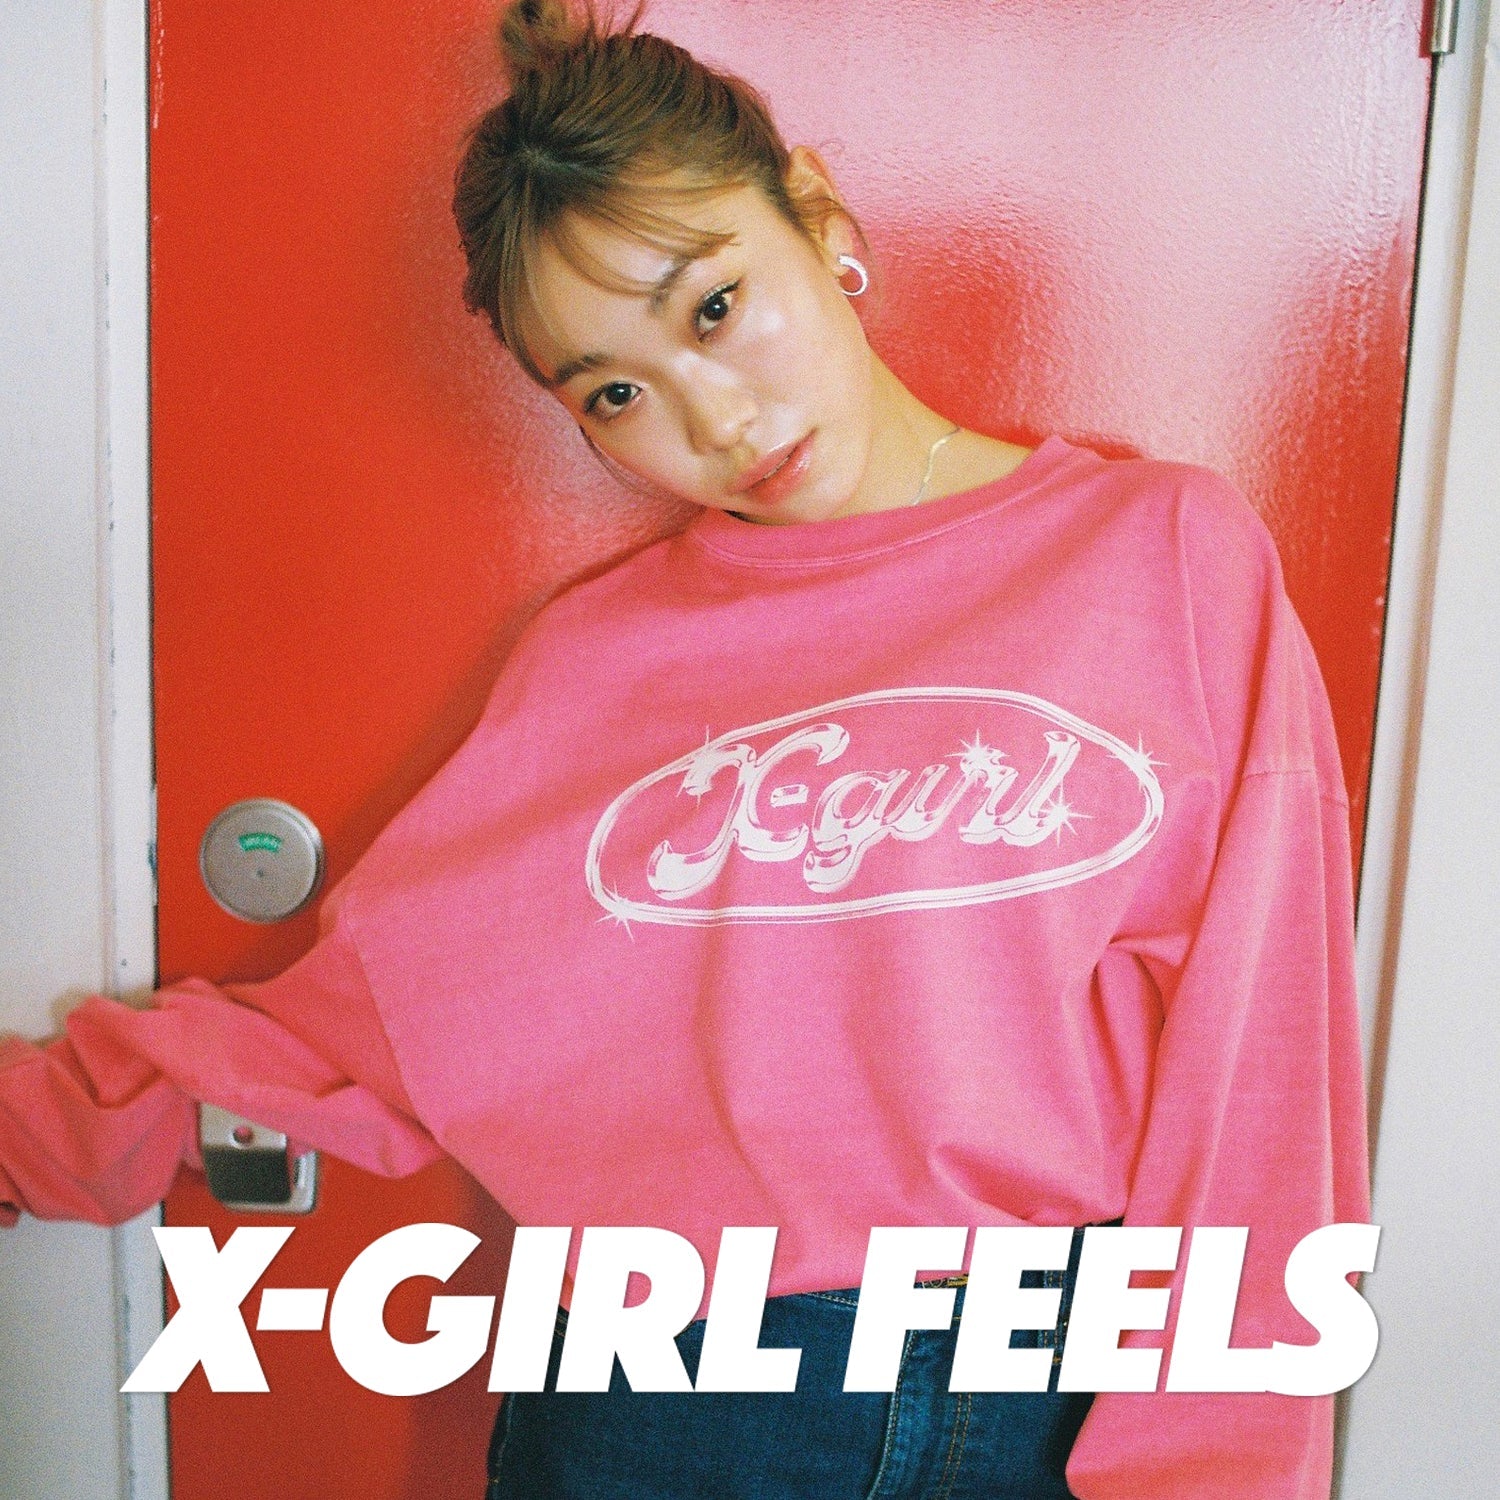 X-girl feels vol.19